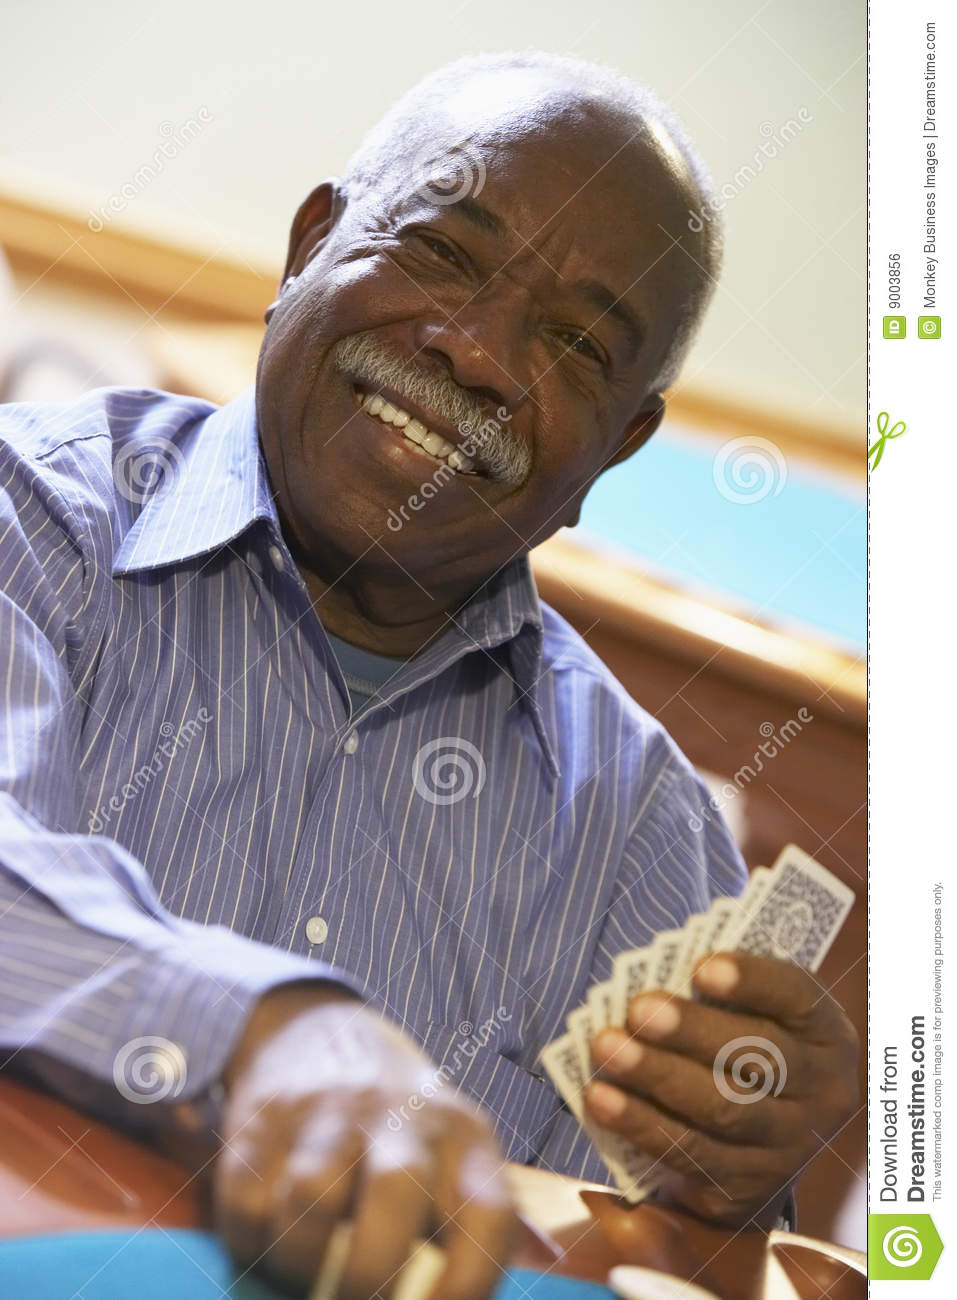 Senior Man Playing Bridge Royalty Free Stock Image   Image  9003856